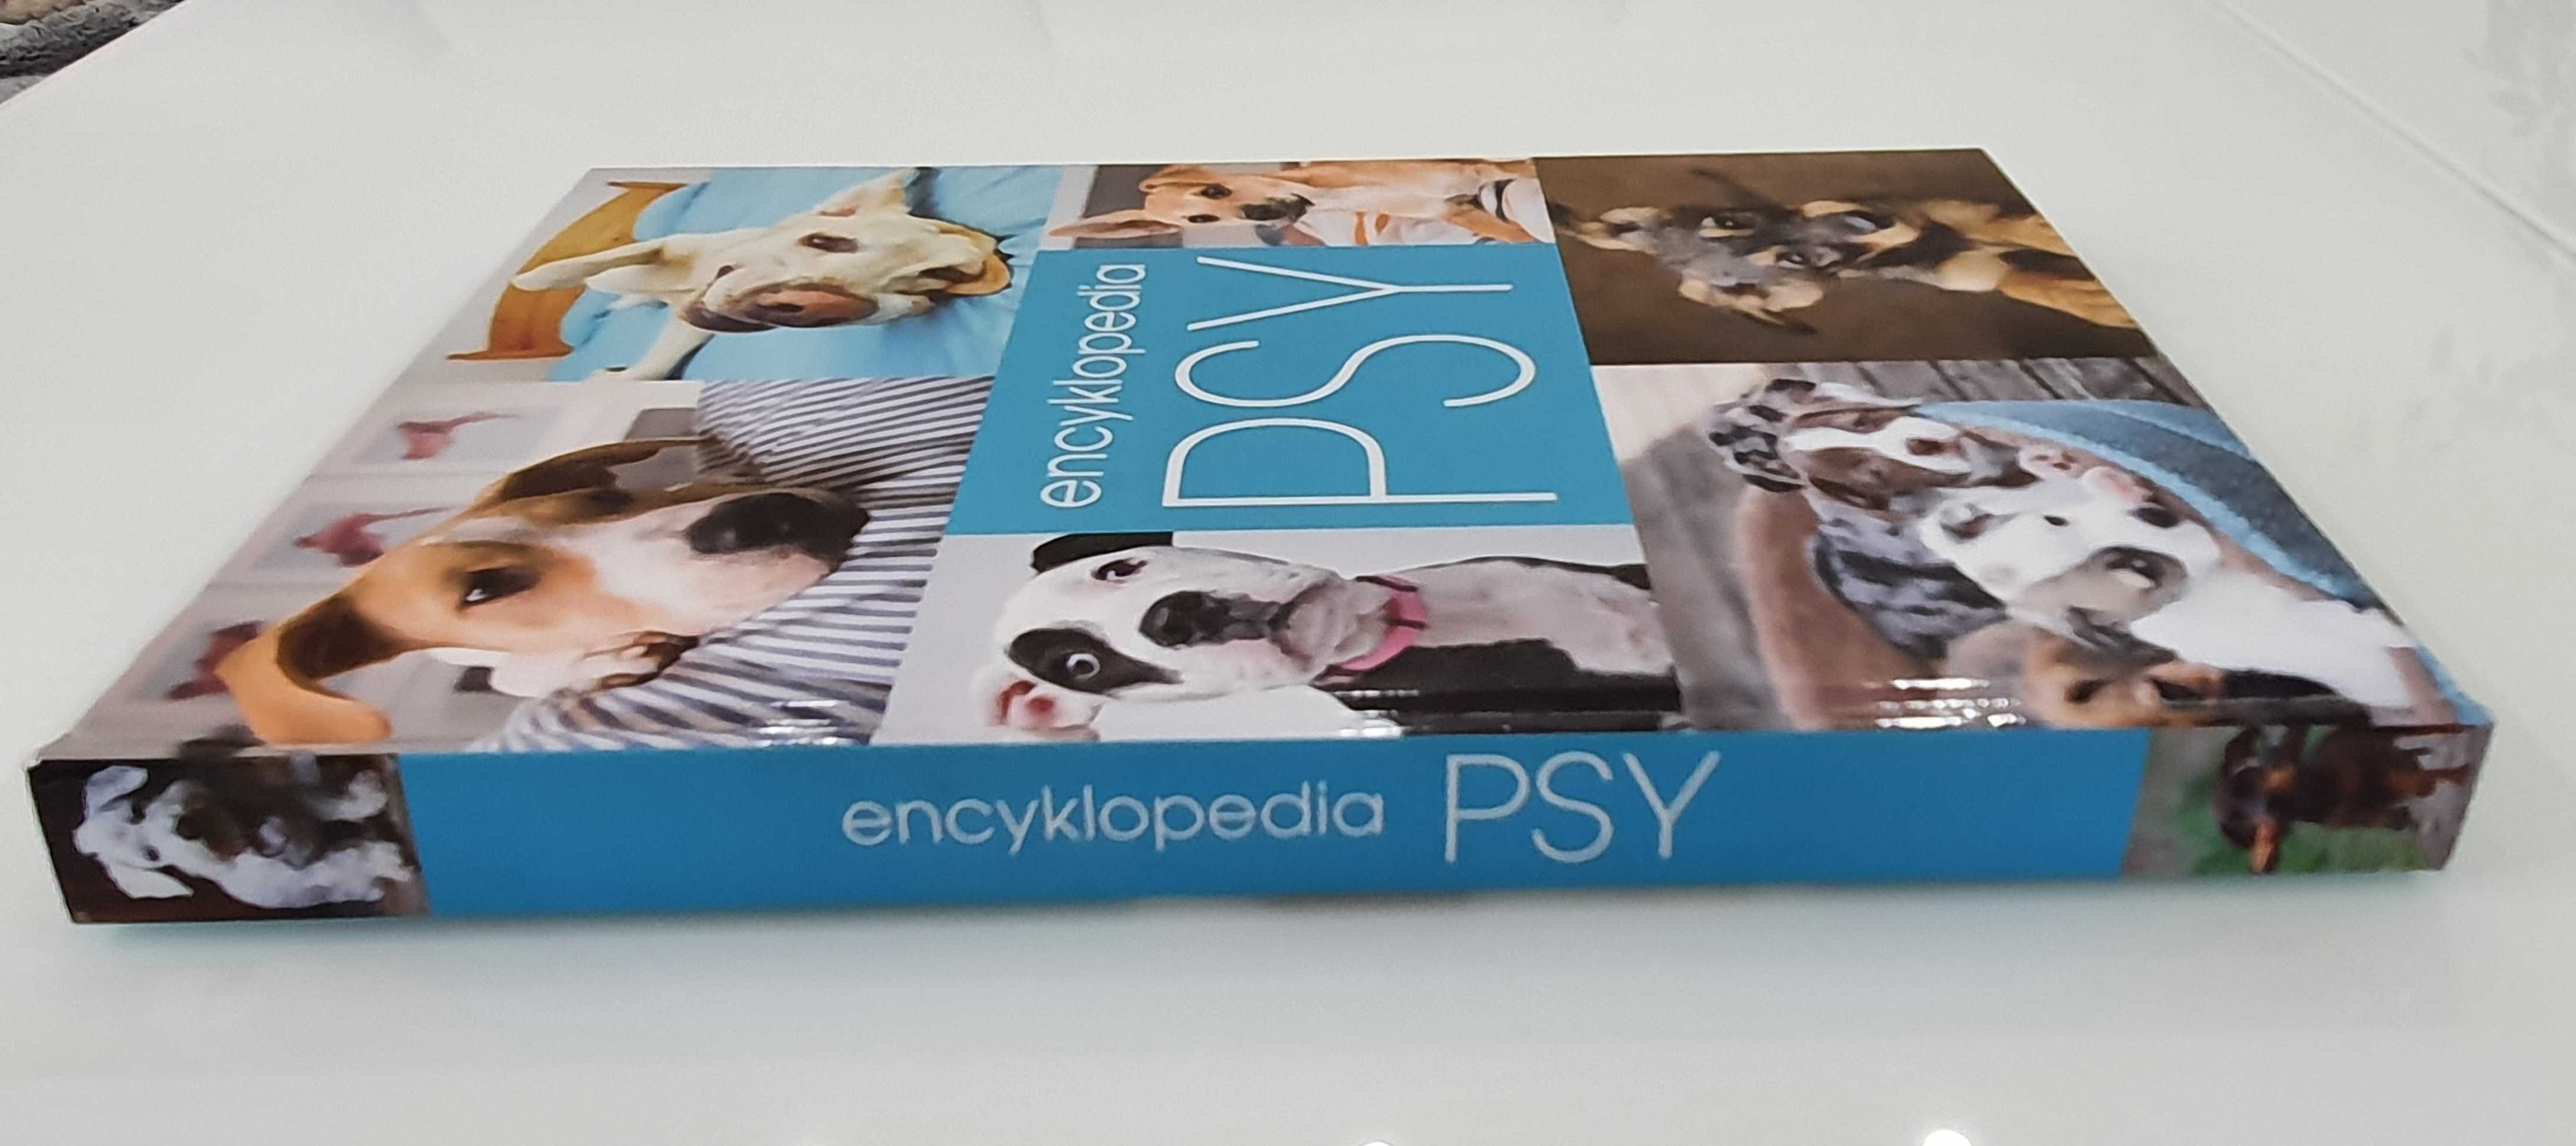 Encyklopedia Psy